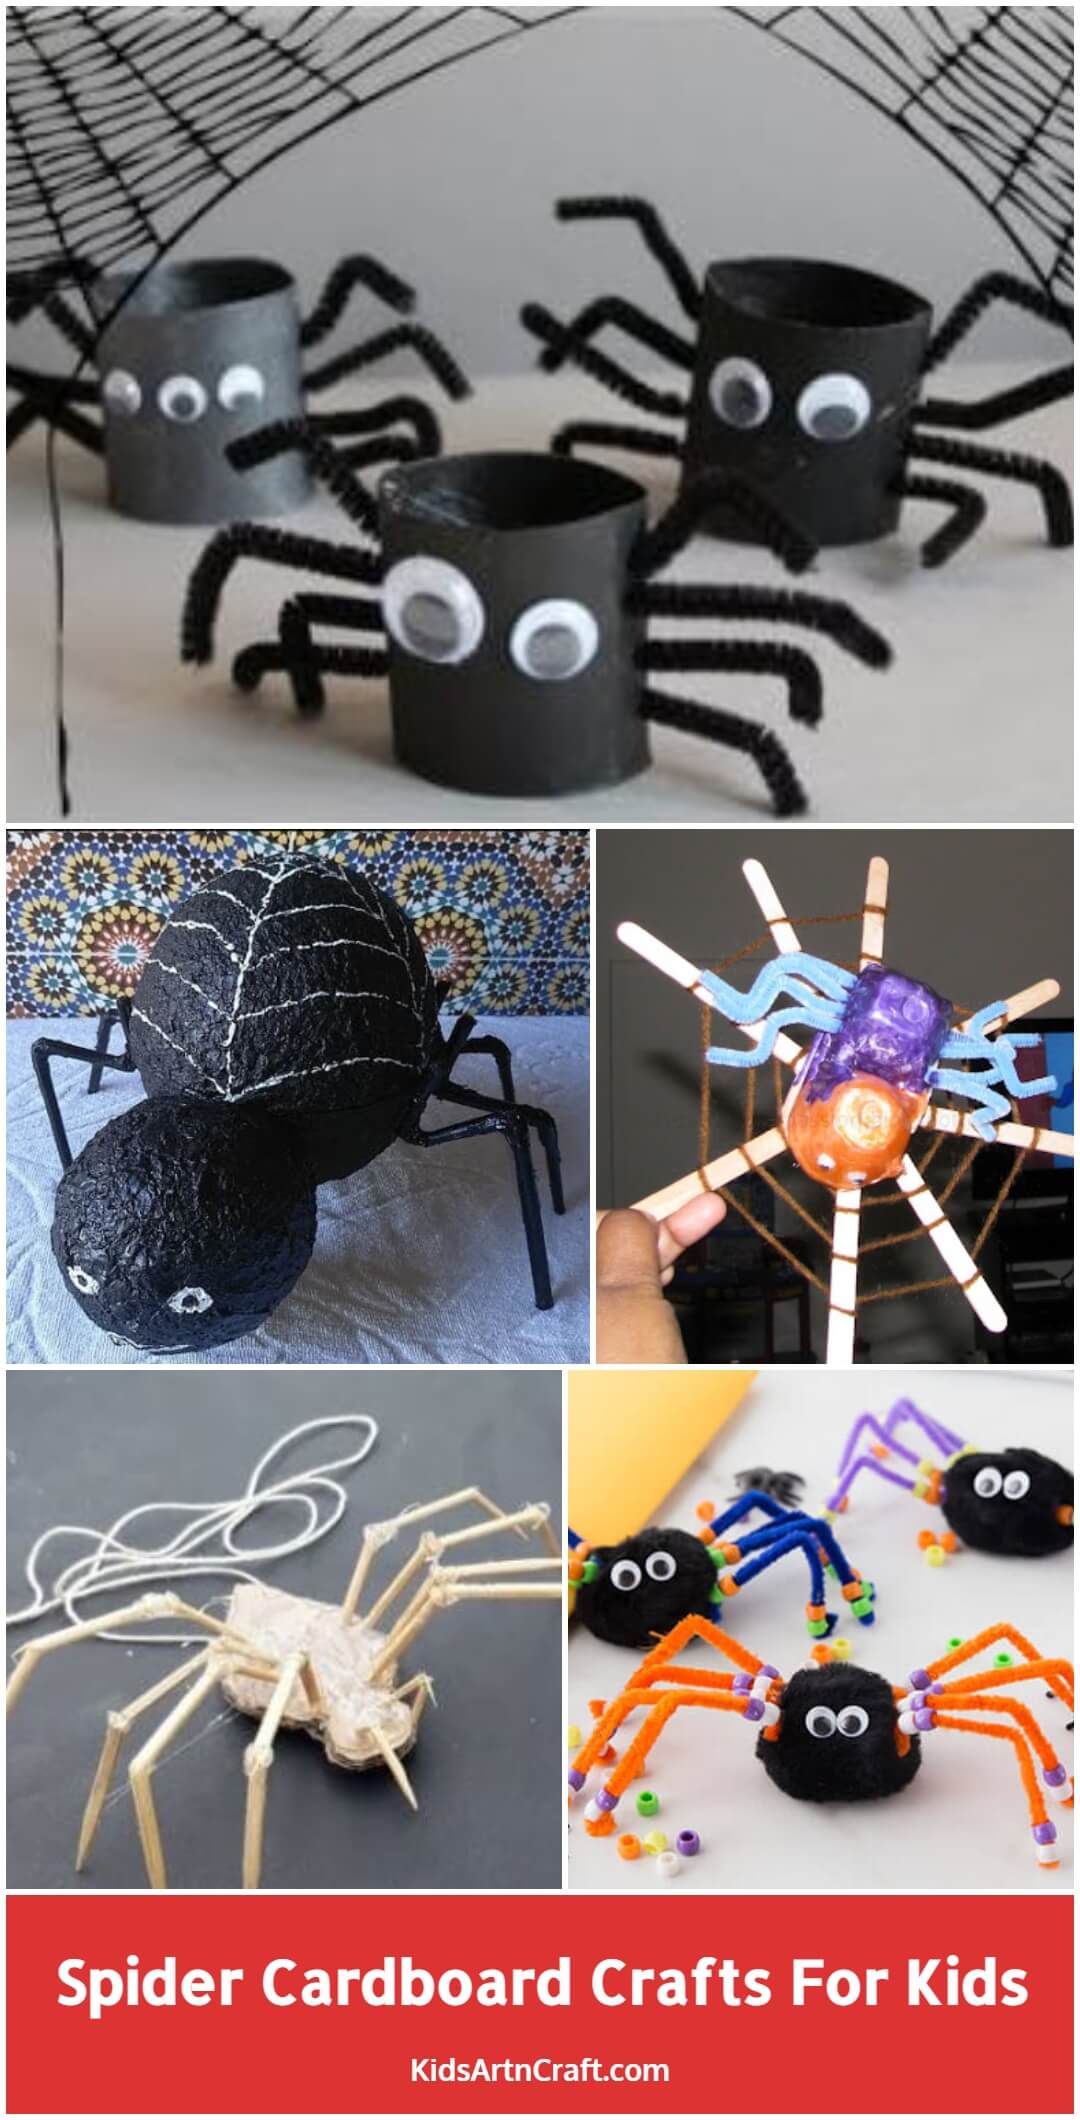 Spider Cardboard Crafts For Kids